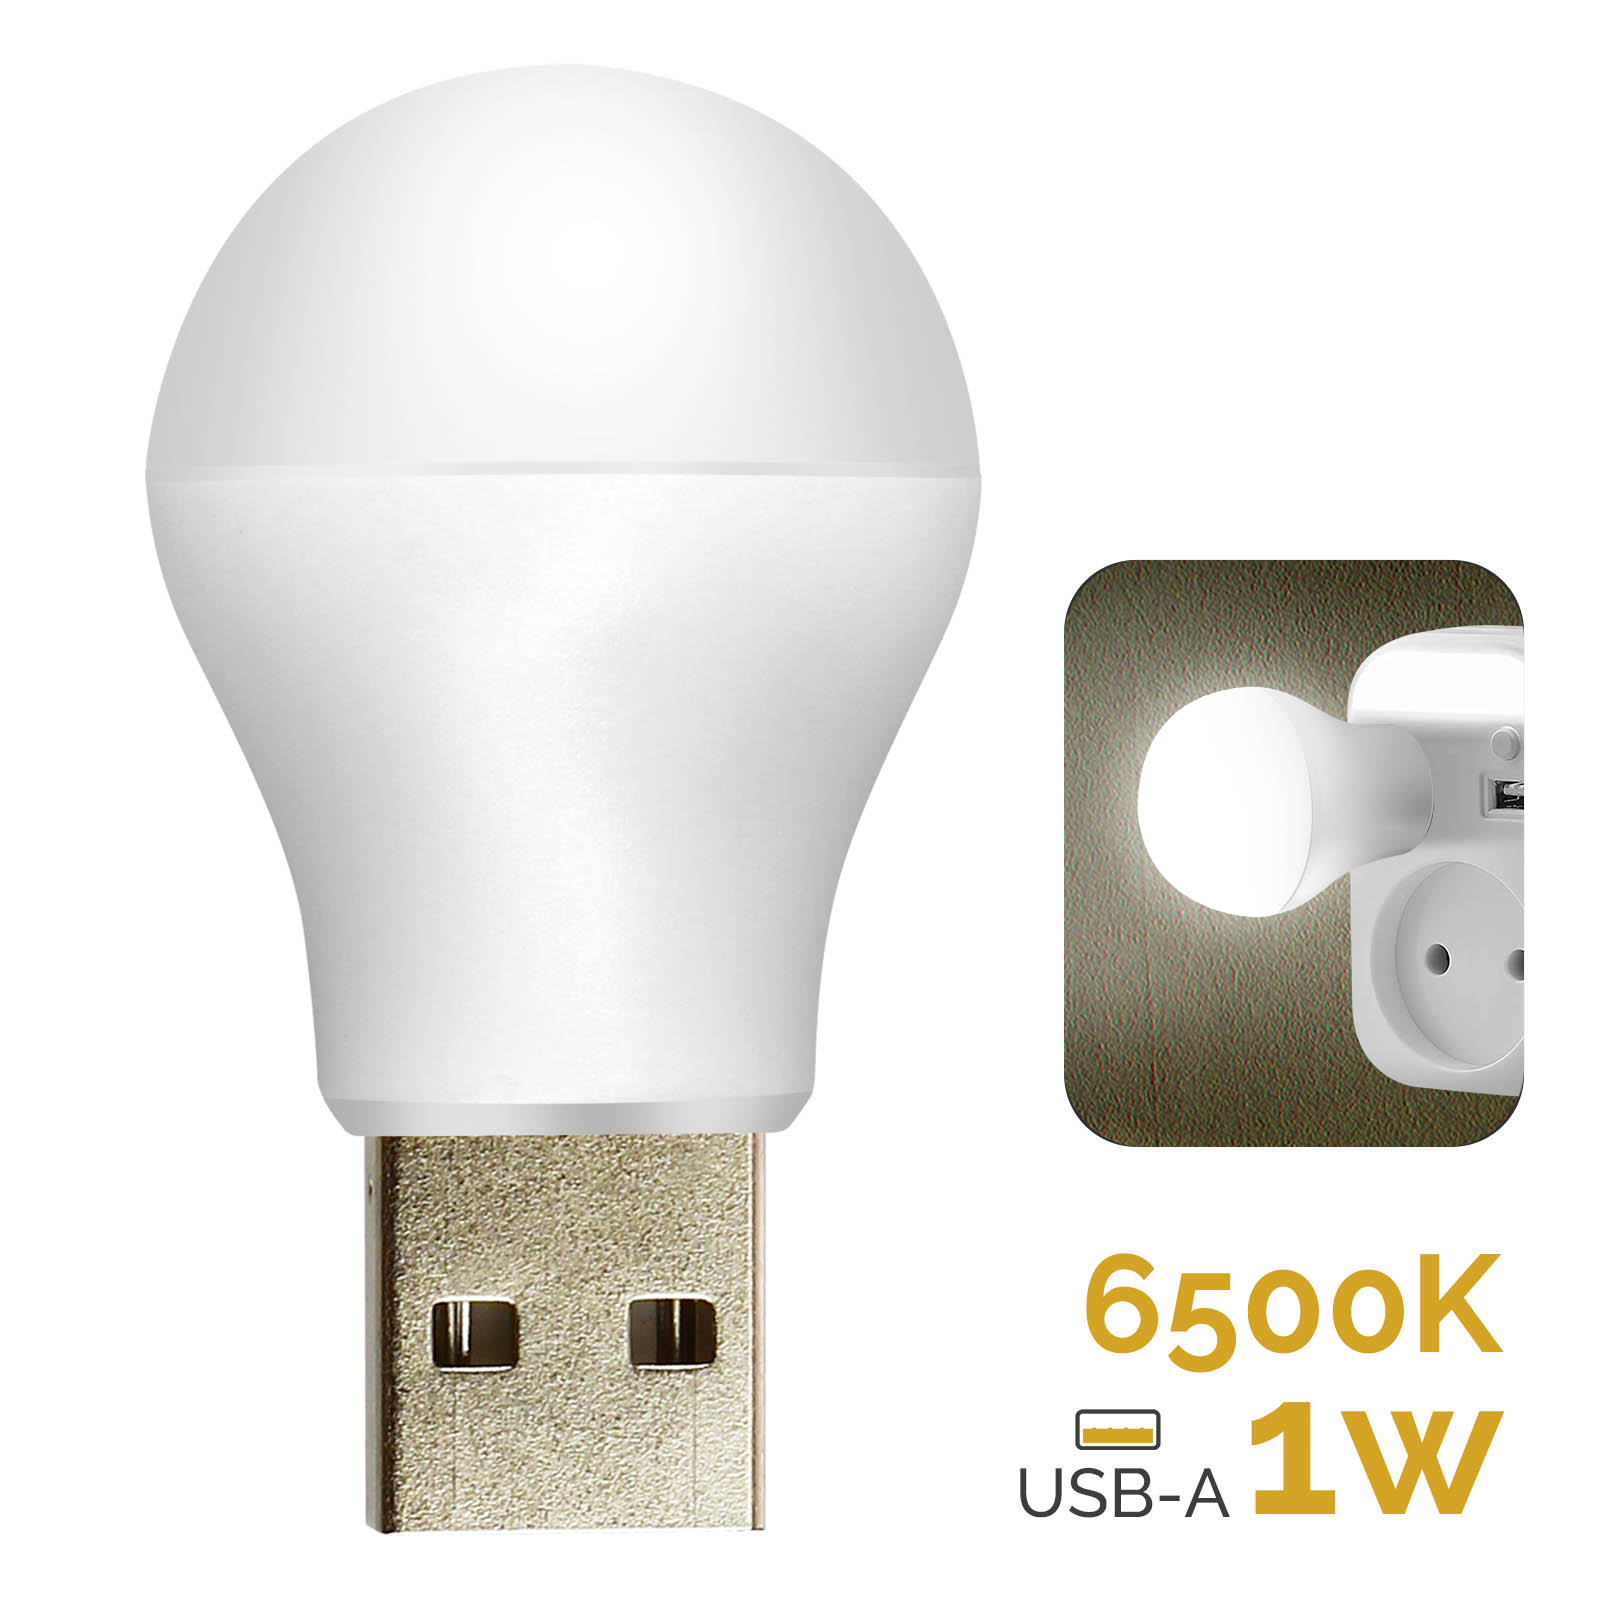 Ampoule LED USB 1W, 6500K avec Format Compact et Universel - Français